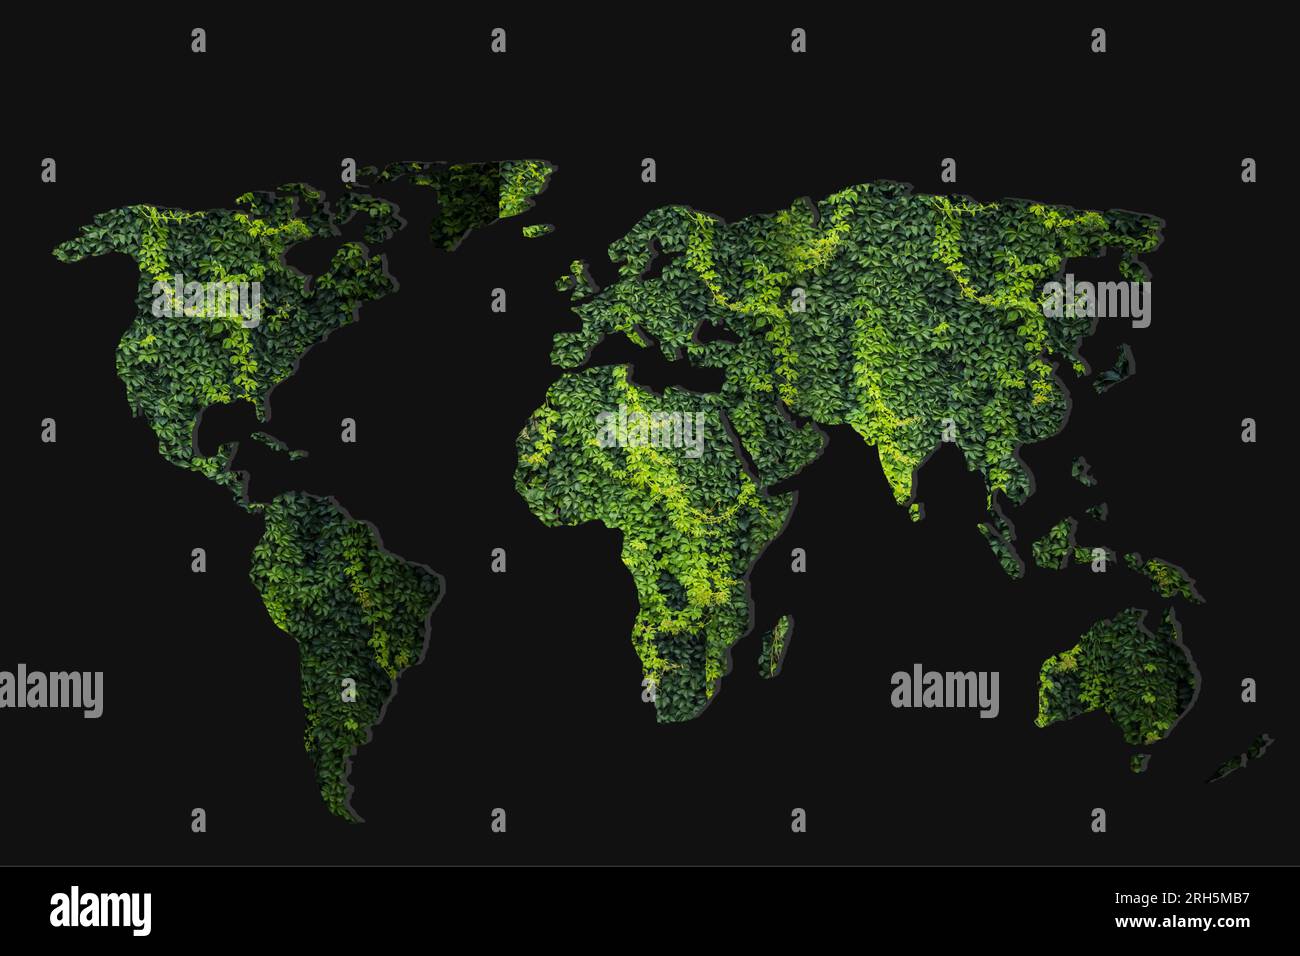 Grob umrissene Weltkarte mit grünen Pflanzen gefüllt Stockfoto